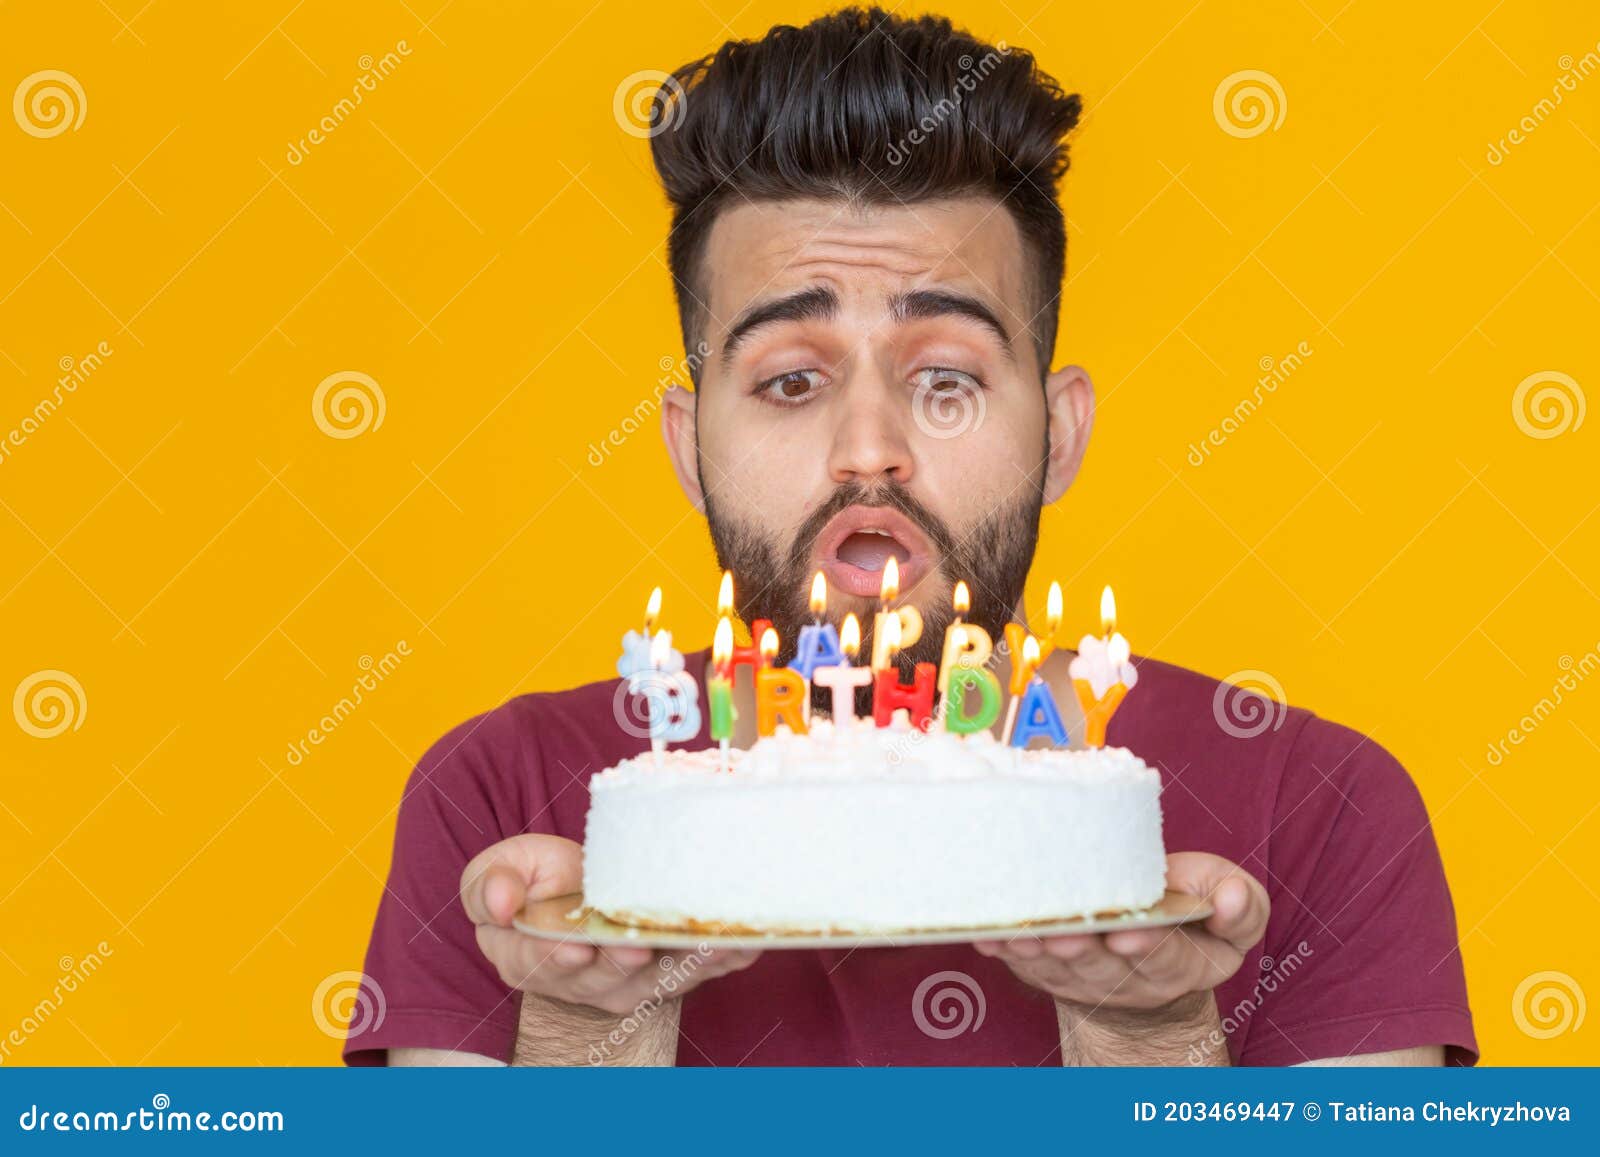 Jonge Man Met Een Baard Die Een Taart Draagt Met De Vermelding Happy Jarig  Gefeliciteerd Met Zijn Verjaardag Op Zijn Verjaardag Stock Afbeelding -  Image Of Knap, Zakenman: 203469447